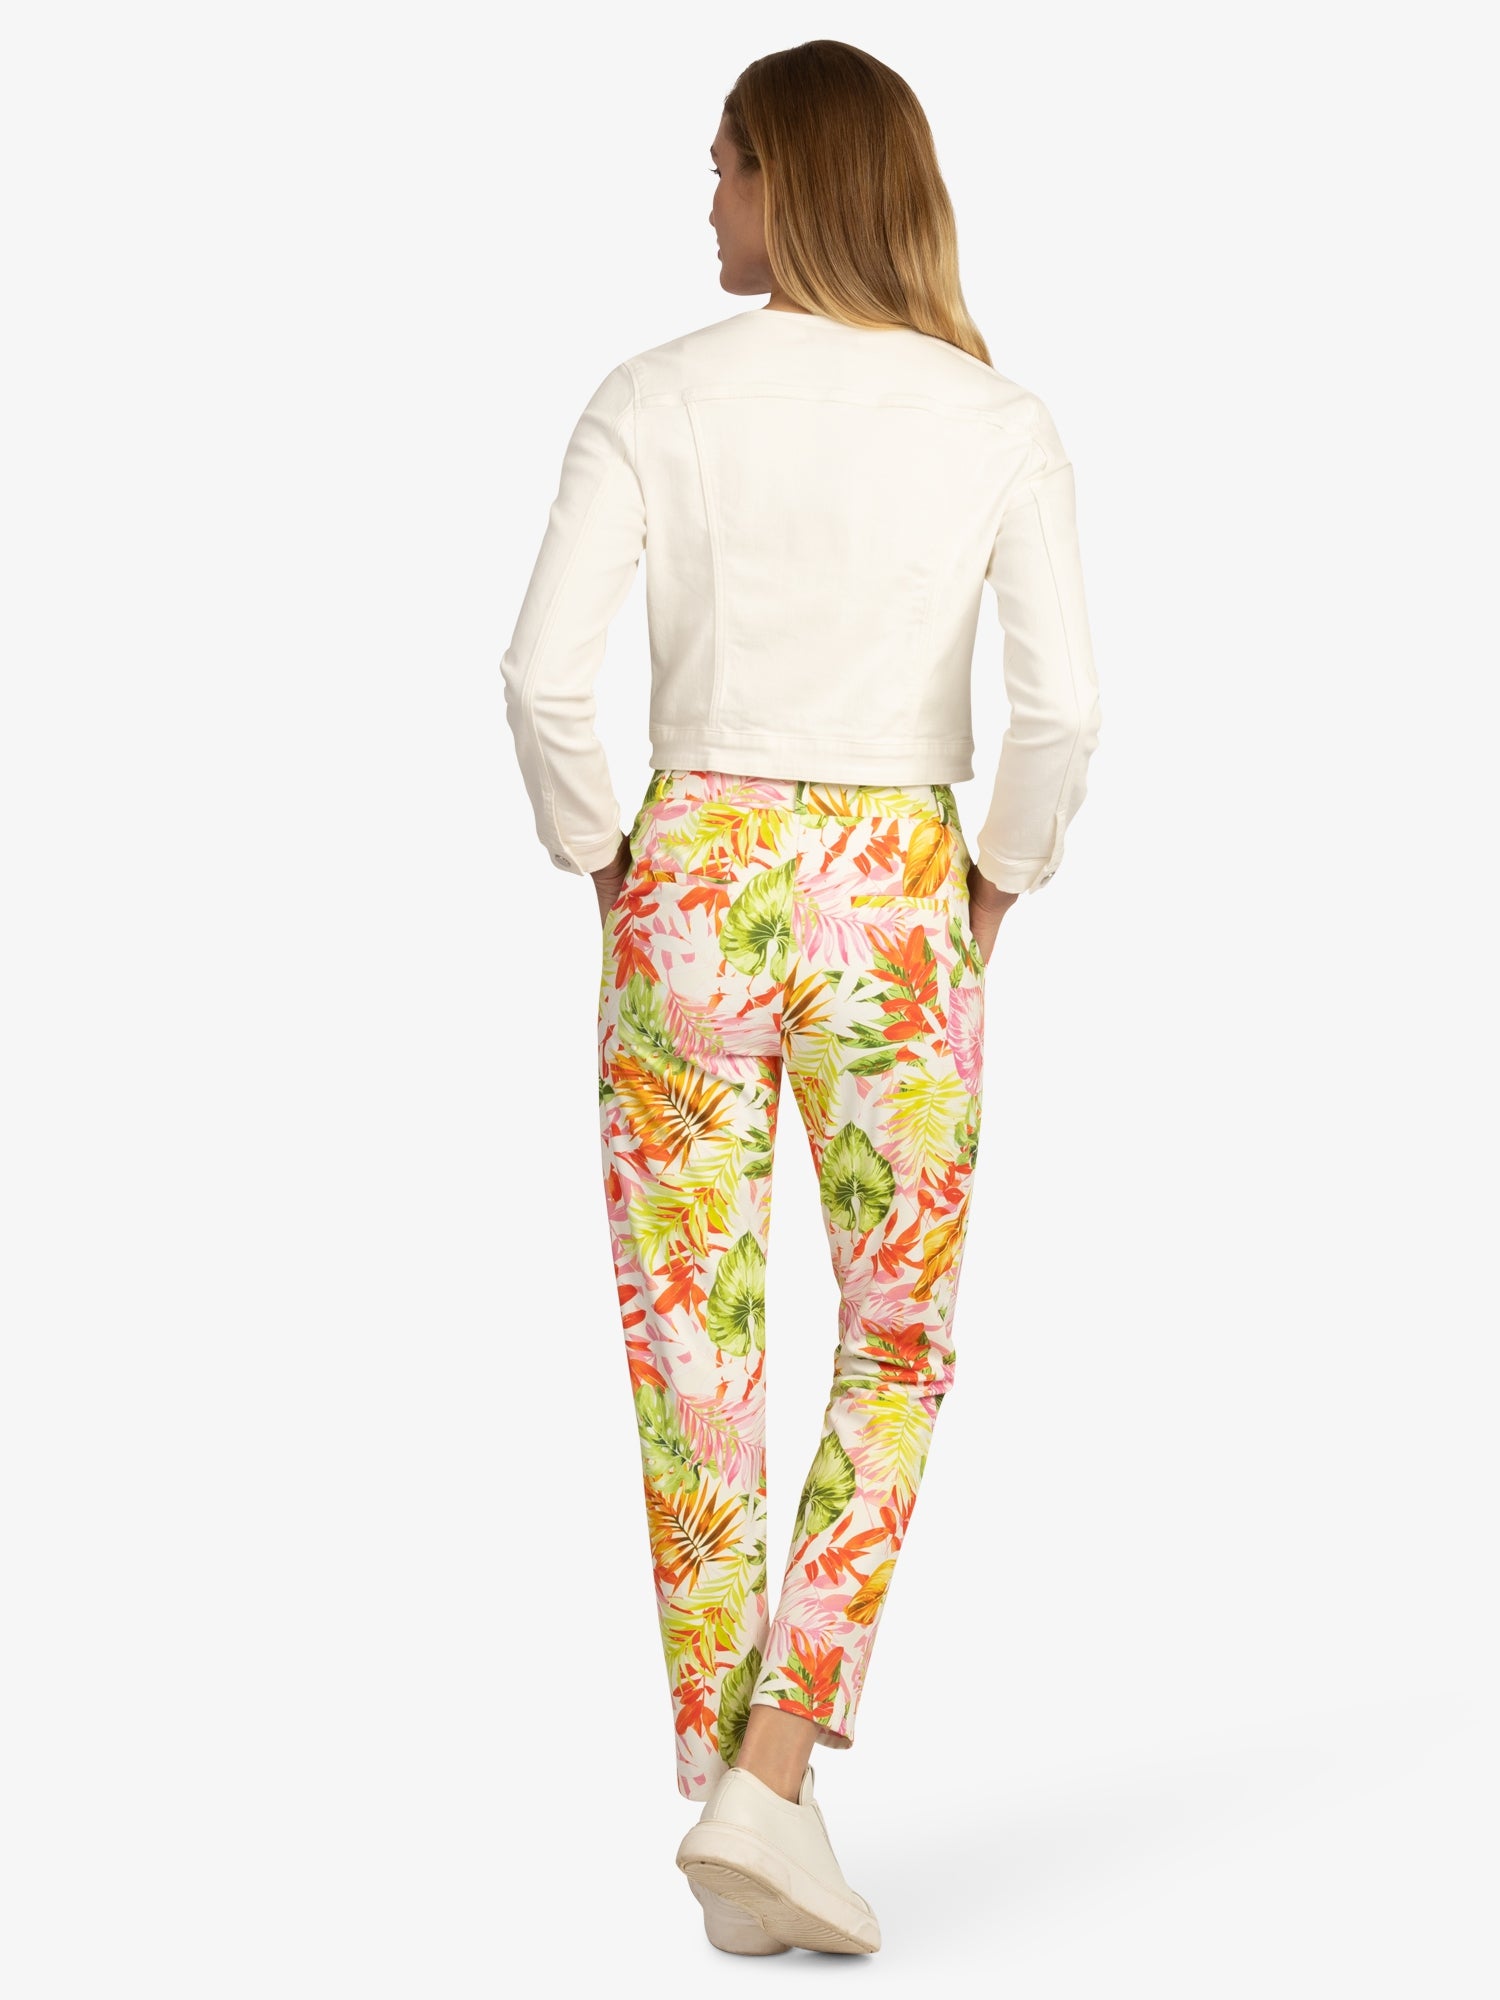 APART Schmale Jerseyhose mit allover bedruckt, Formbund und Gürtelschlaufen | creme-multicolor